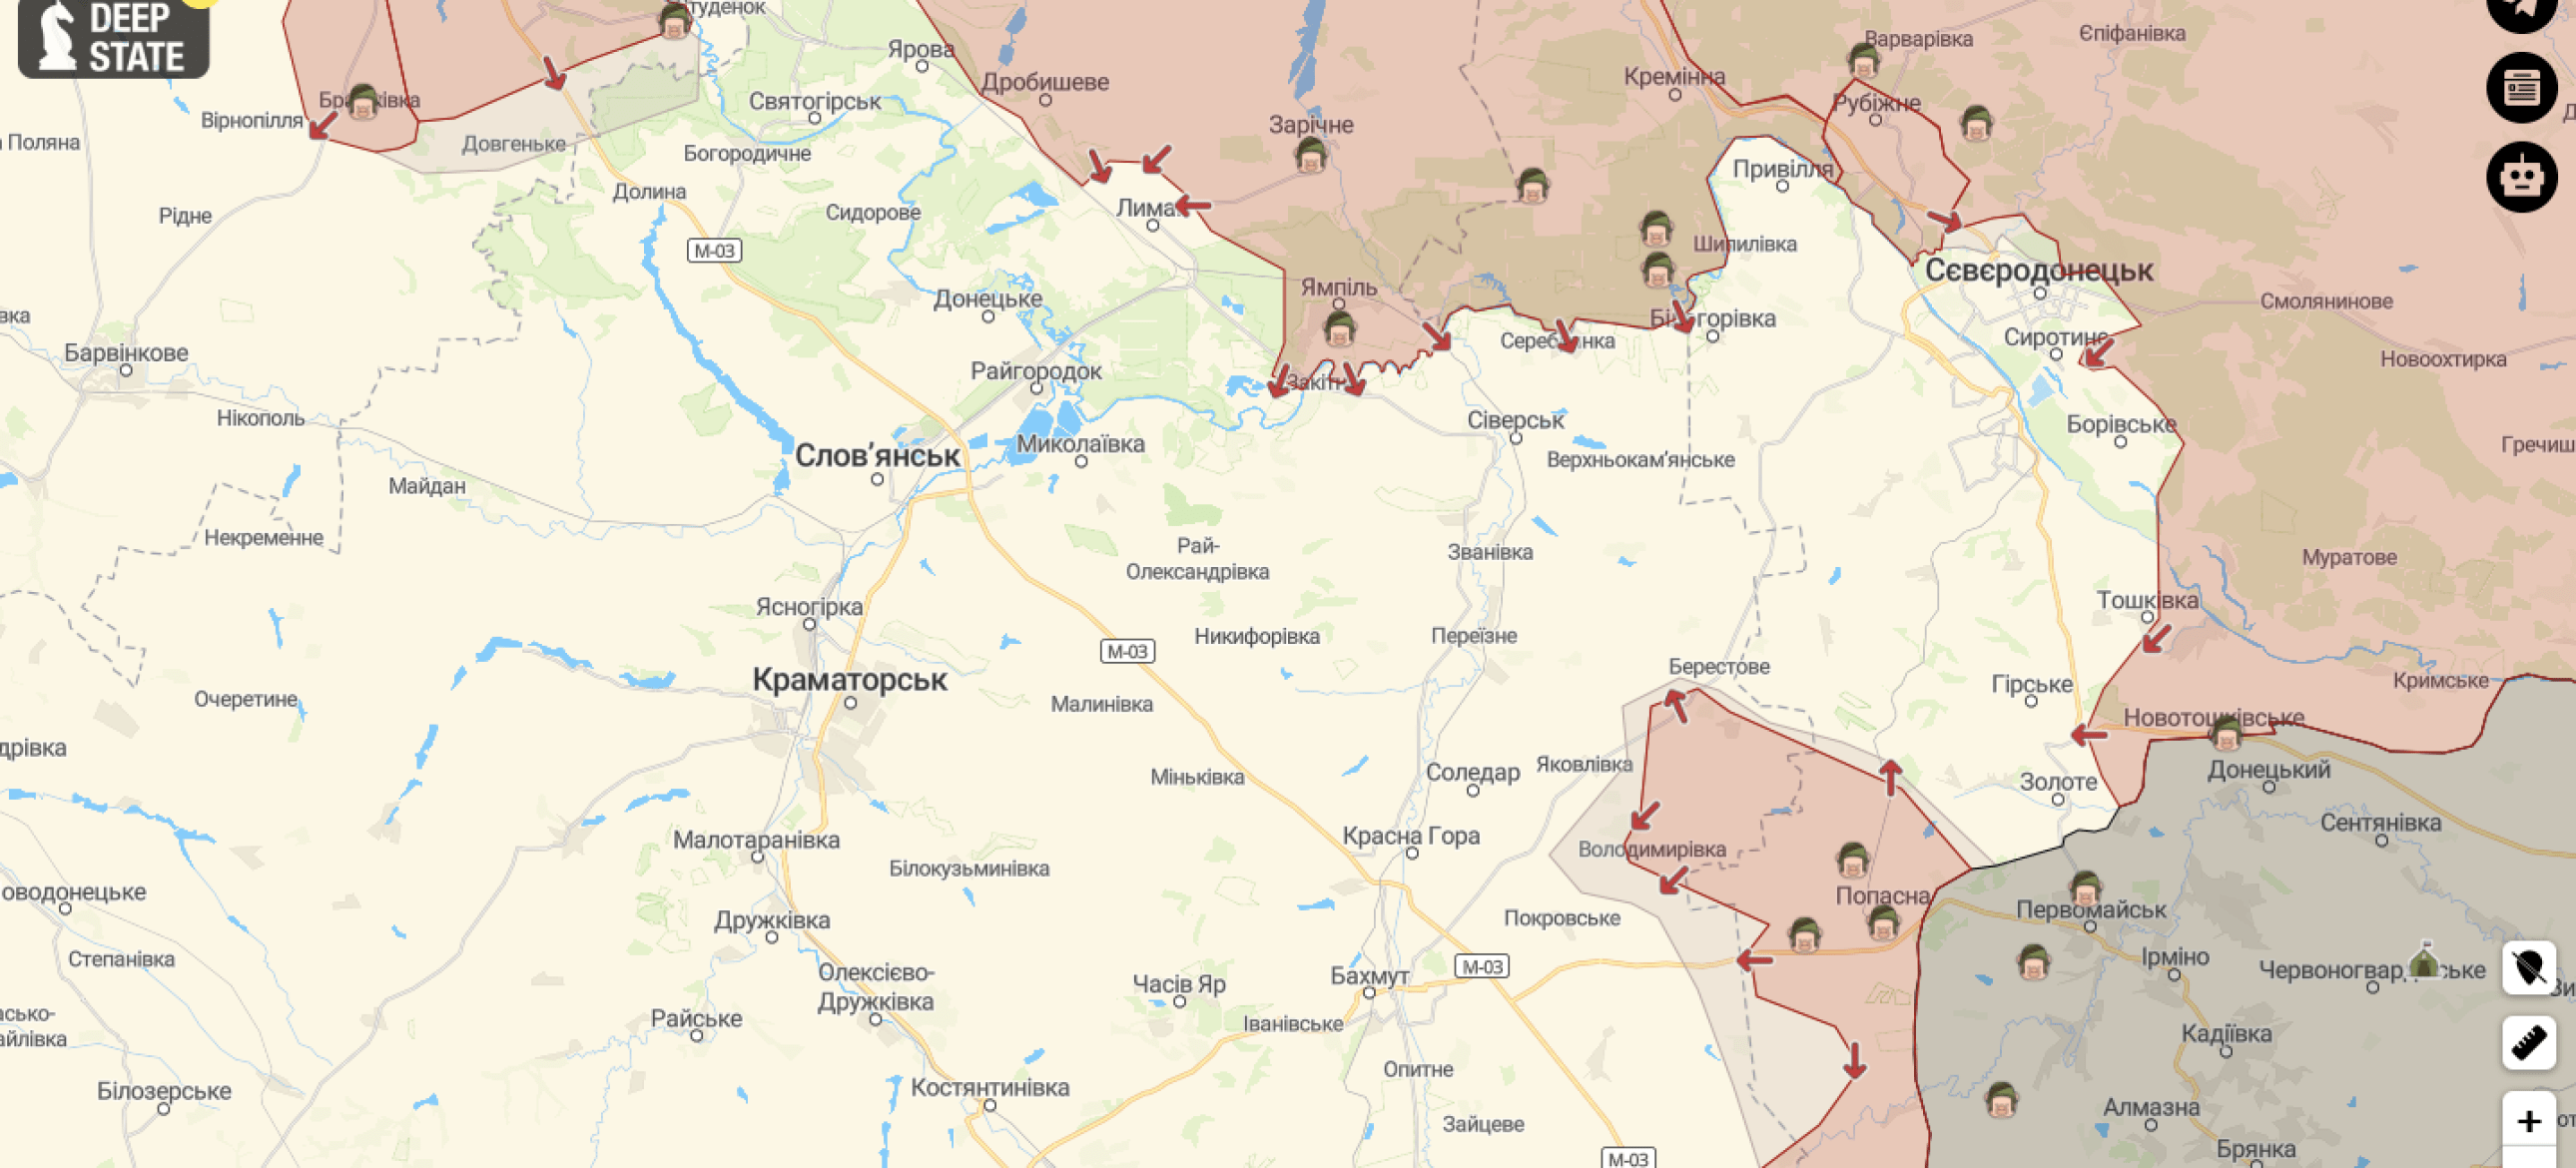 Северодонецк на карте